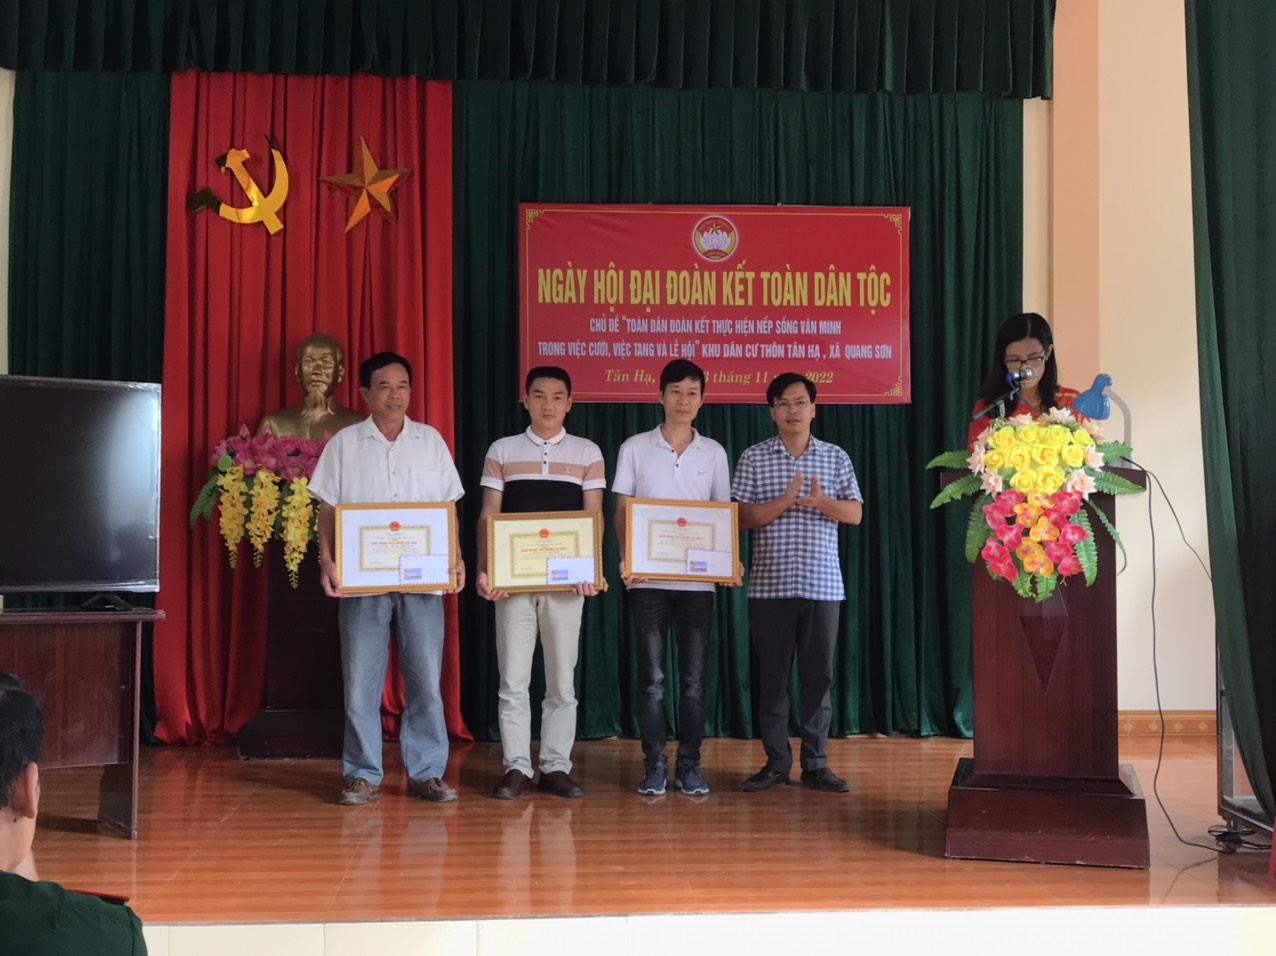 Thôn thôn Tân Hạ làm điểm tổ chức ngày hội đại đoàn kết toàn dân tộc, kỷ niệm 92 năm ngày thành lập Mặt trận dân tộc thống nhất Việt Nam (18/11/1930-18/11/2022).